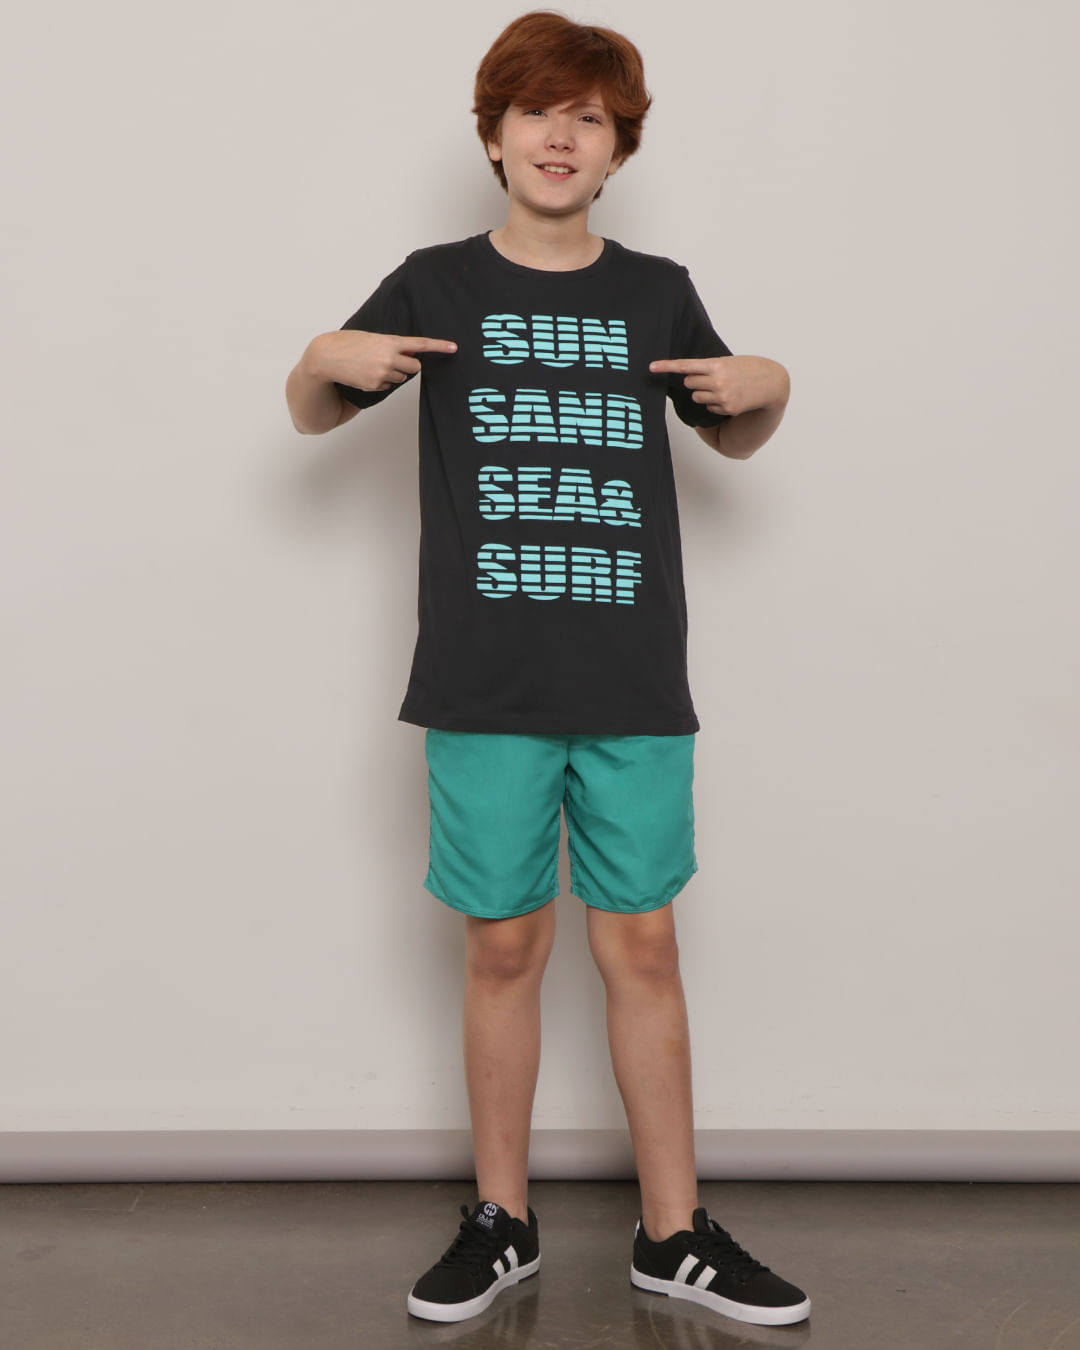 Camiseta-Juvenil-Estampa-Surf-Manga-Curta-Preta